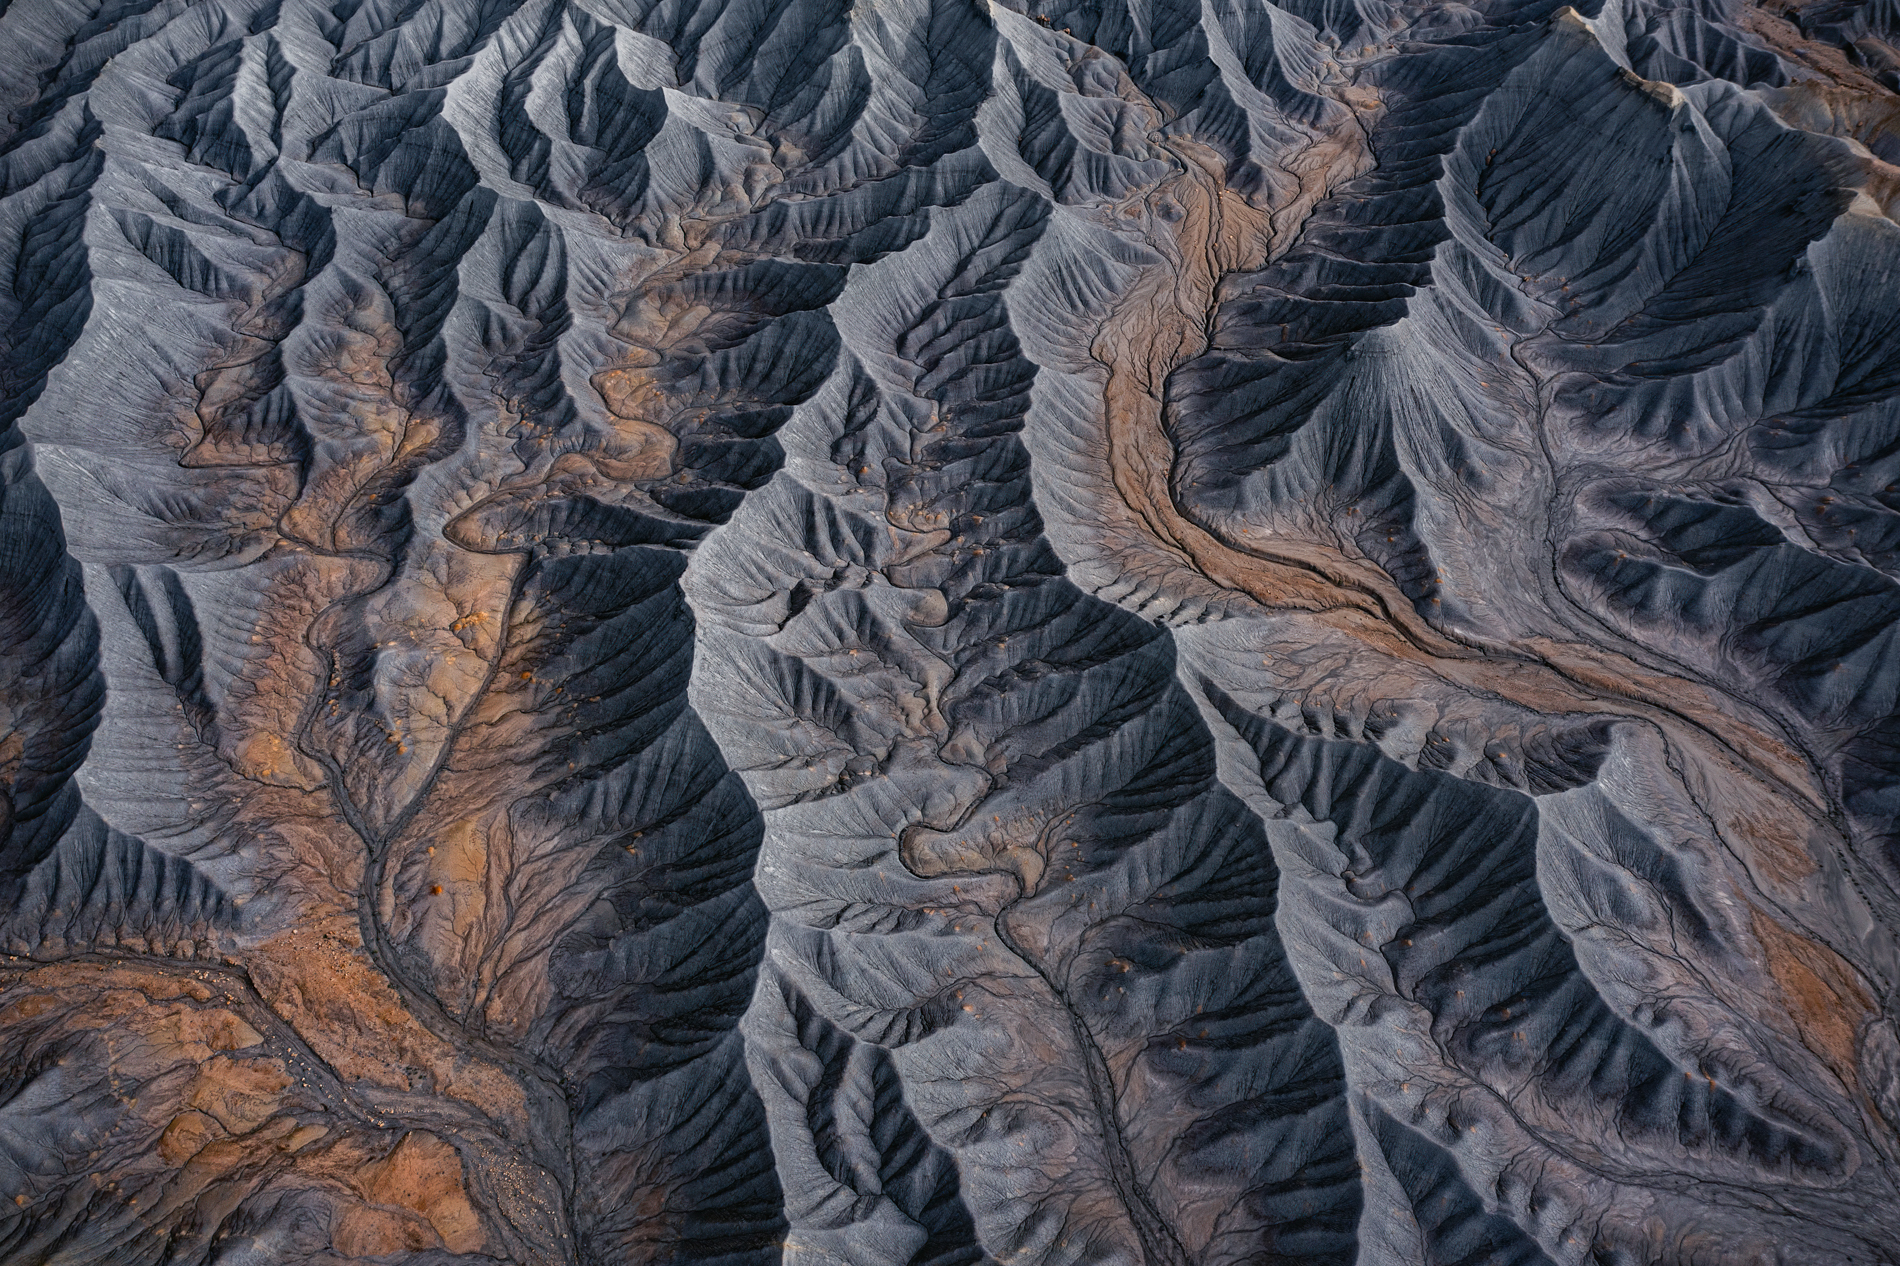 Aerial landscape photography captured above Utah's Badlands.